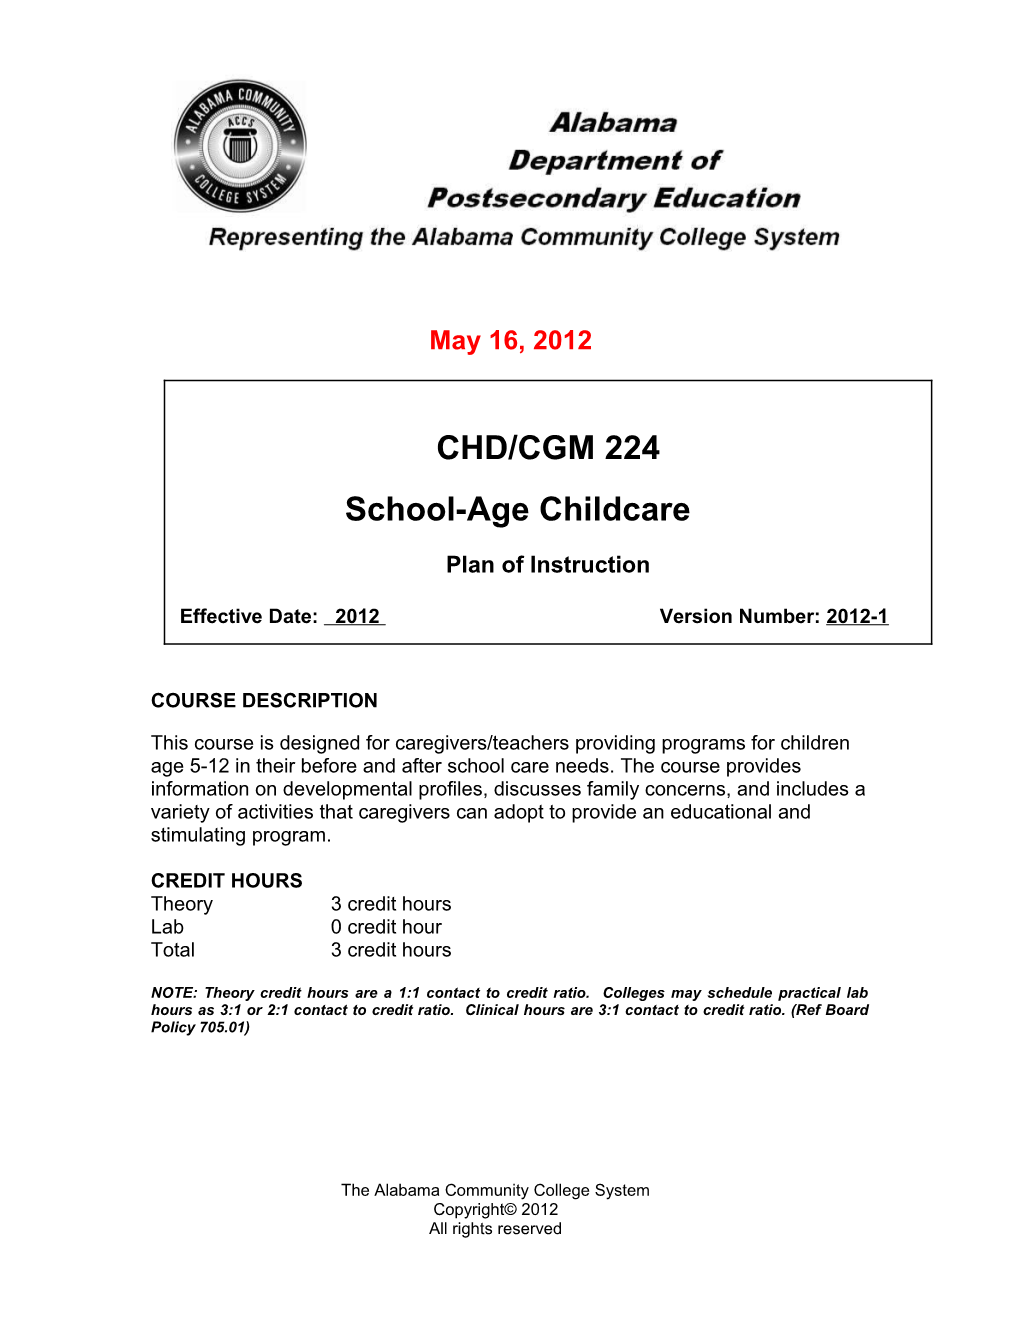 CHD 224 - School-Age Childcare